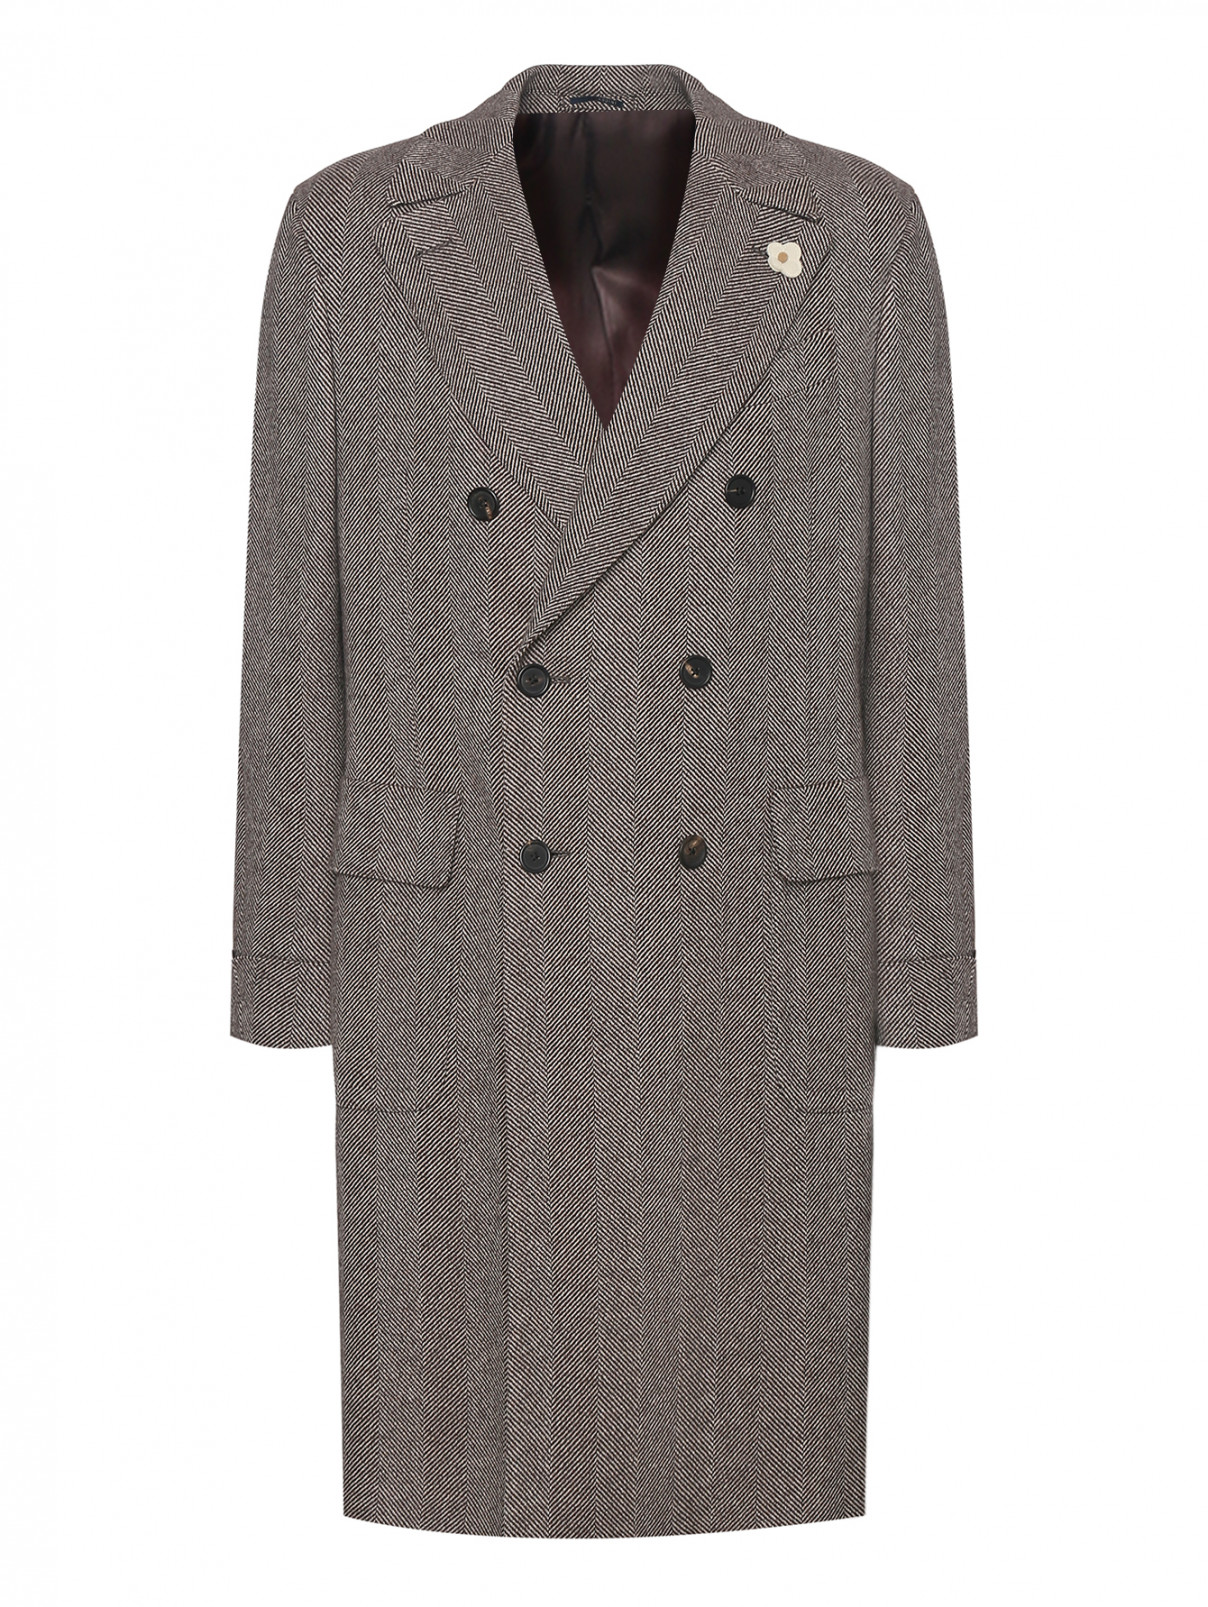 Двубортное пальто из шерсти с брошью LARDINI  –  Общий вид  – Цвет:  Коричневый